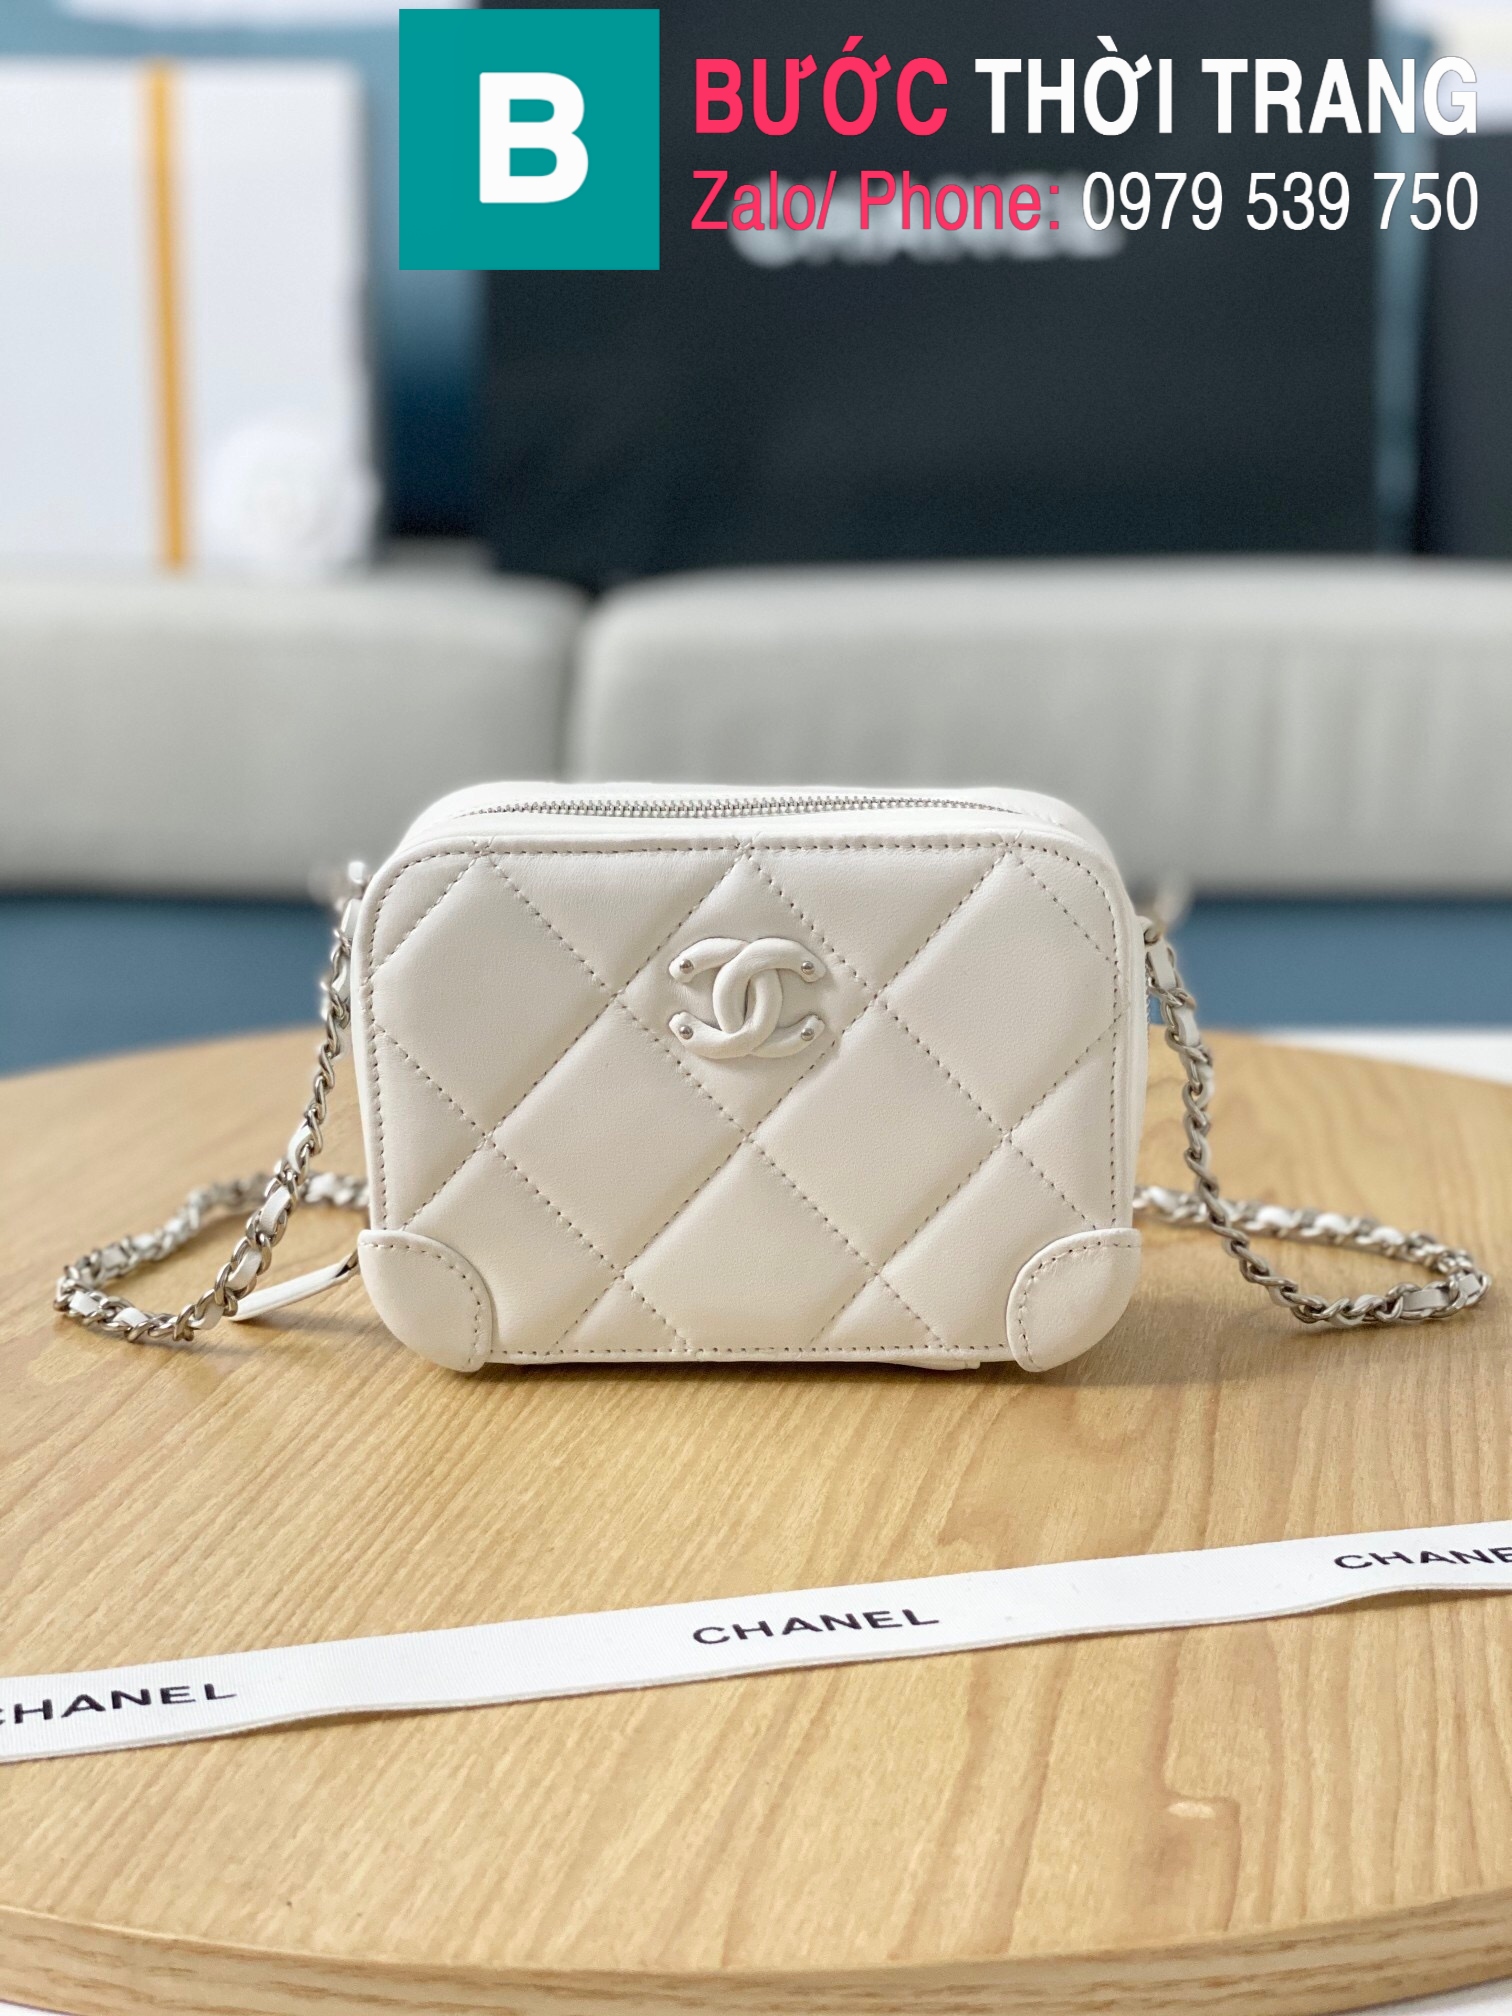 Túi xách Chanel nữ siêu cấp - Order túi xách VIP I FREE SHIP